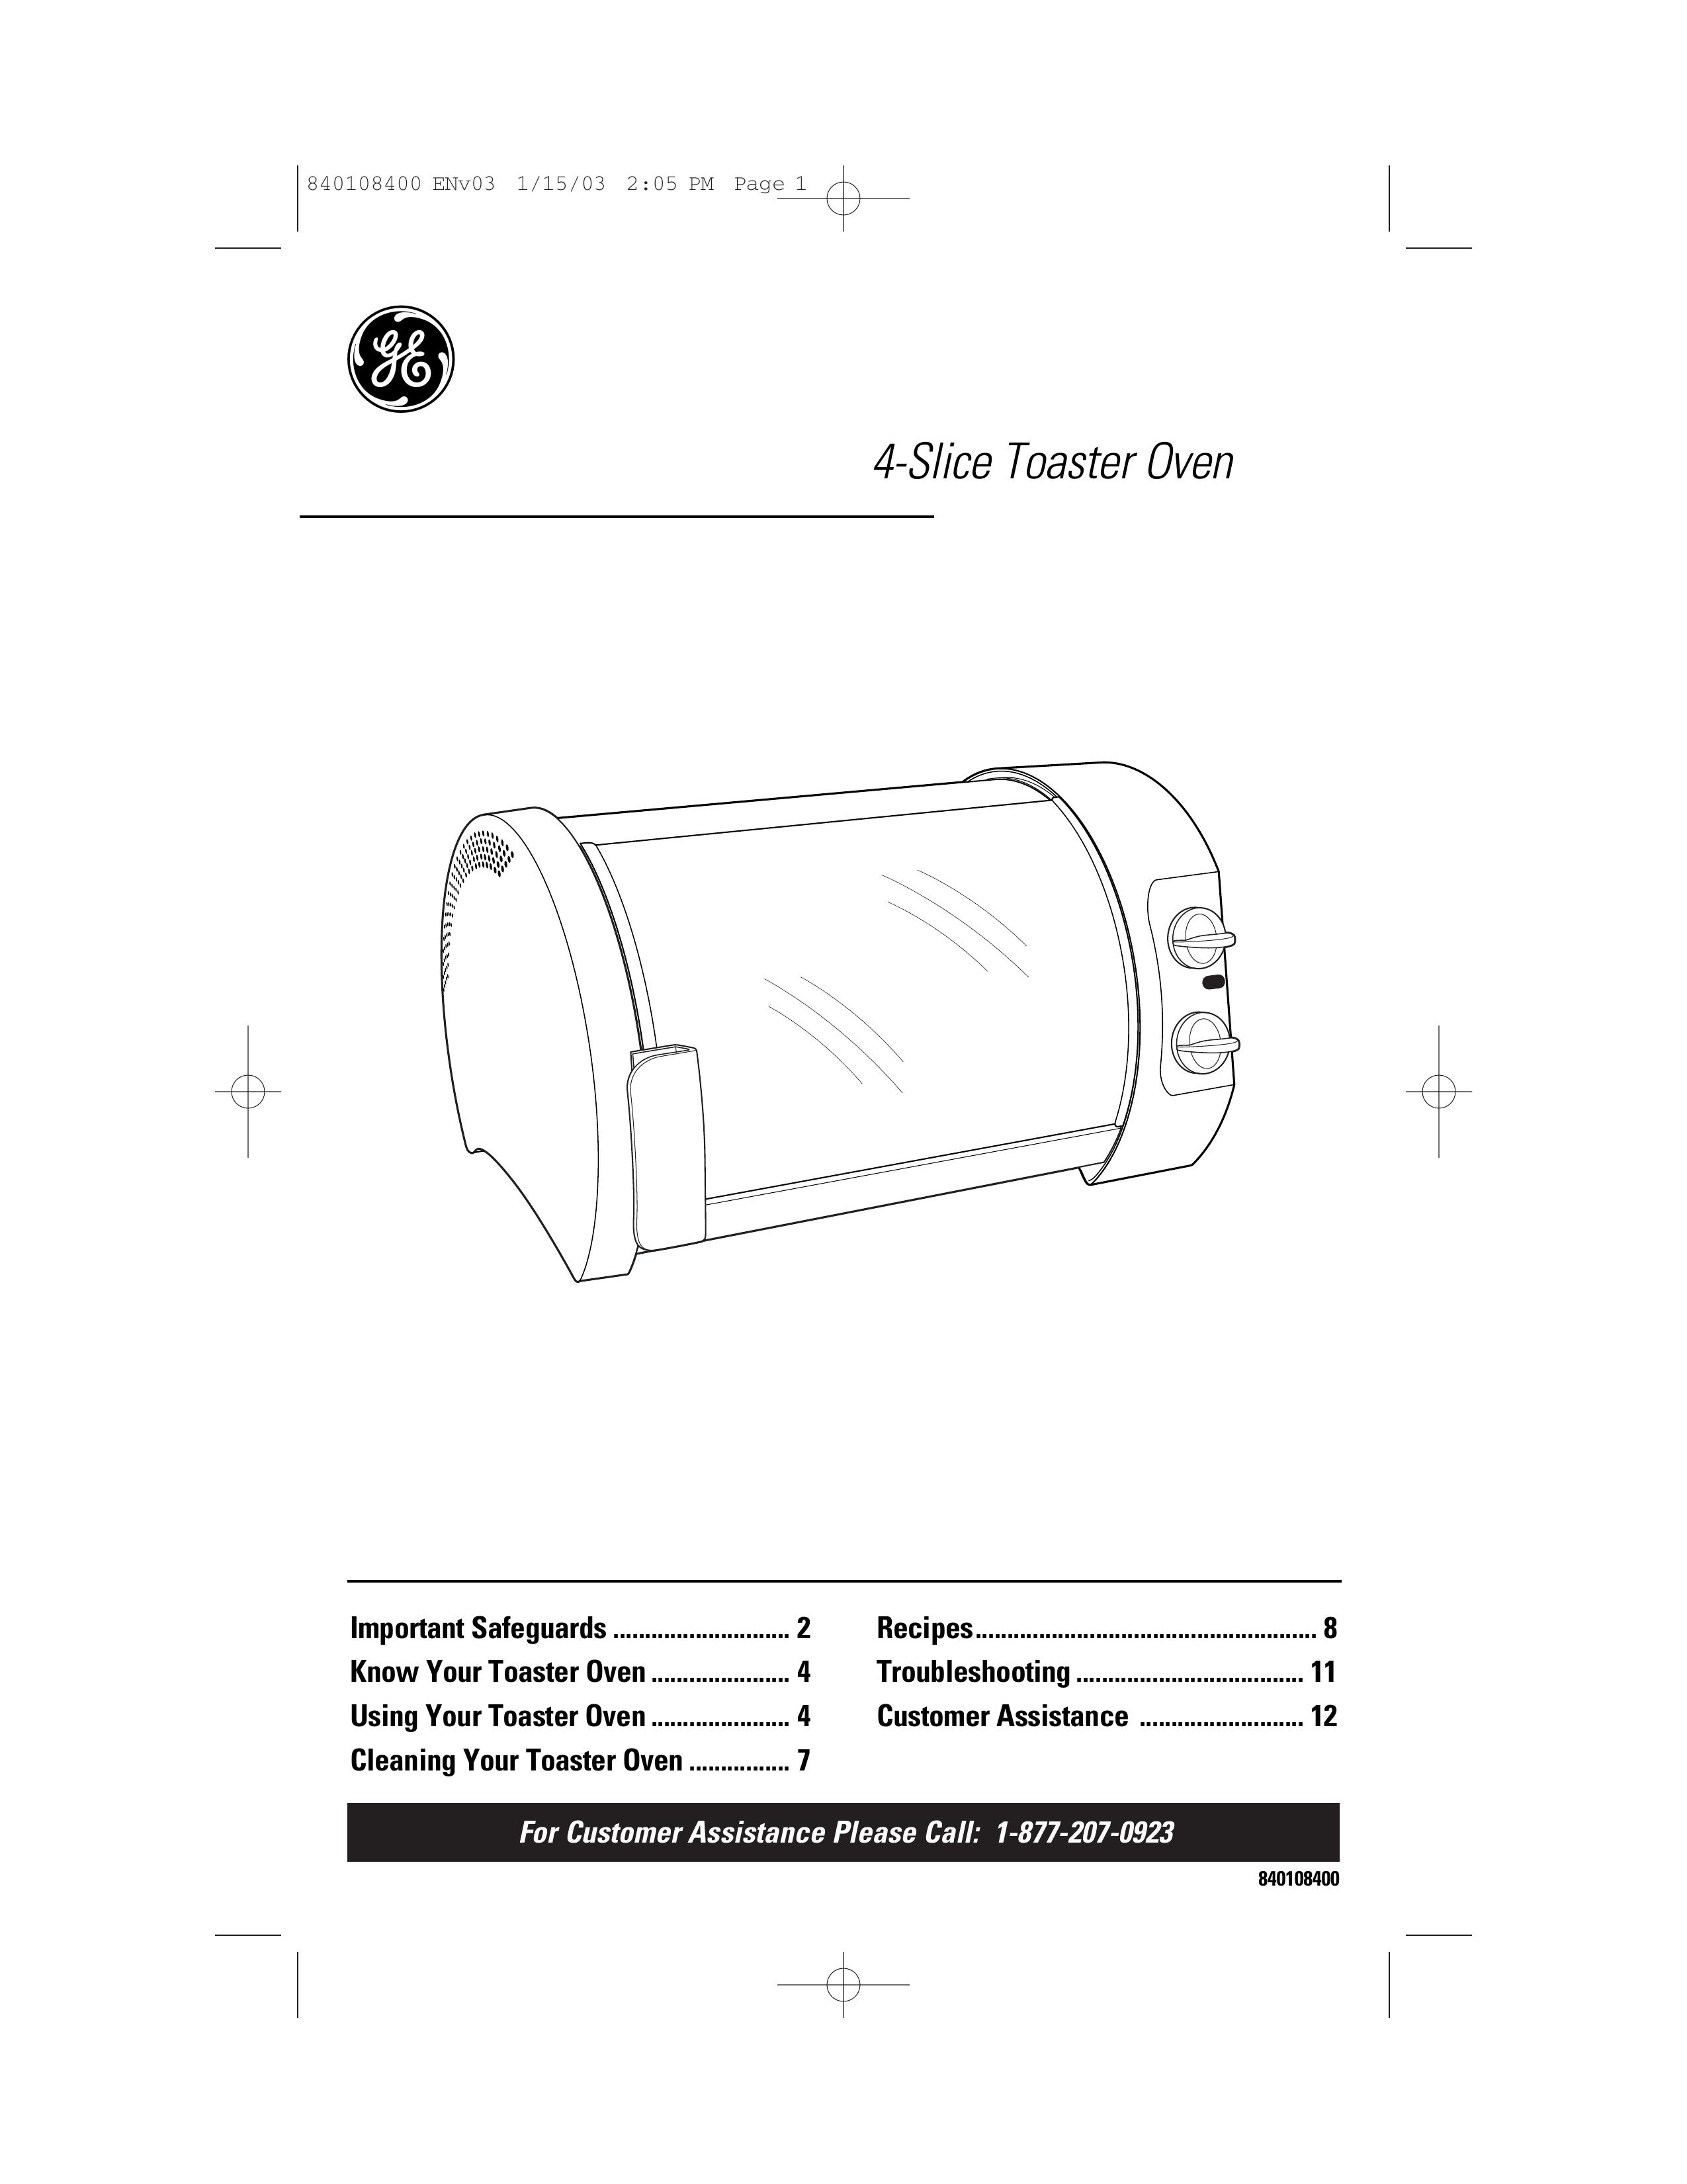 GE 840108400 Toaster User Manual